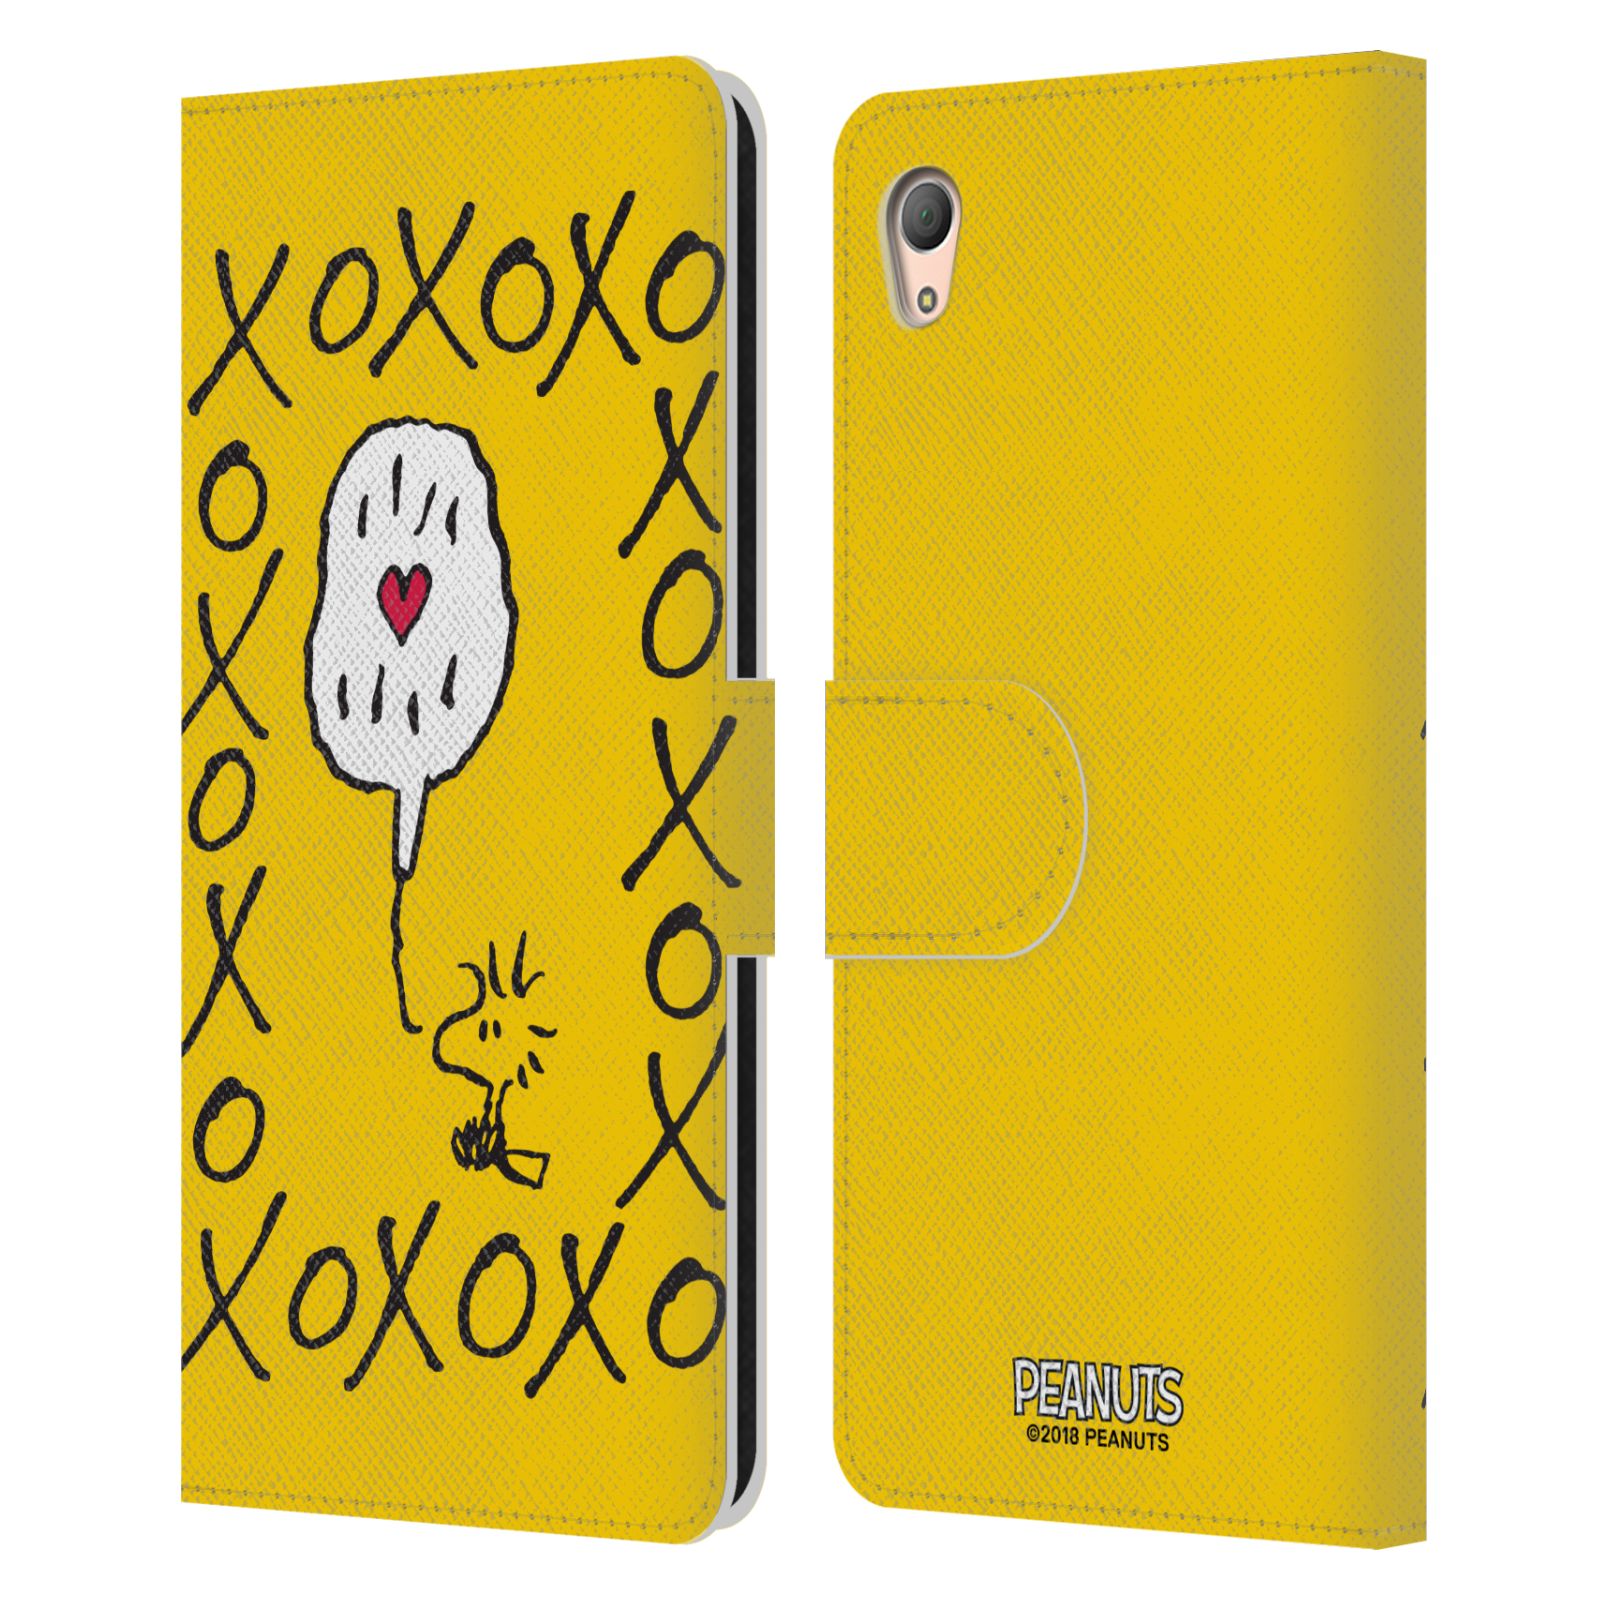 Pouzdro na mobil Sony Xperia Z3 PLUS - Head Case - Peanuts - Woodstock ptáček XOXO